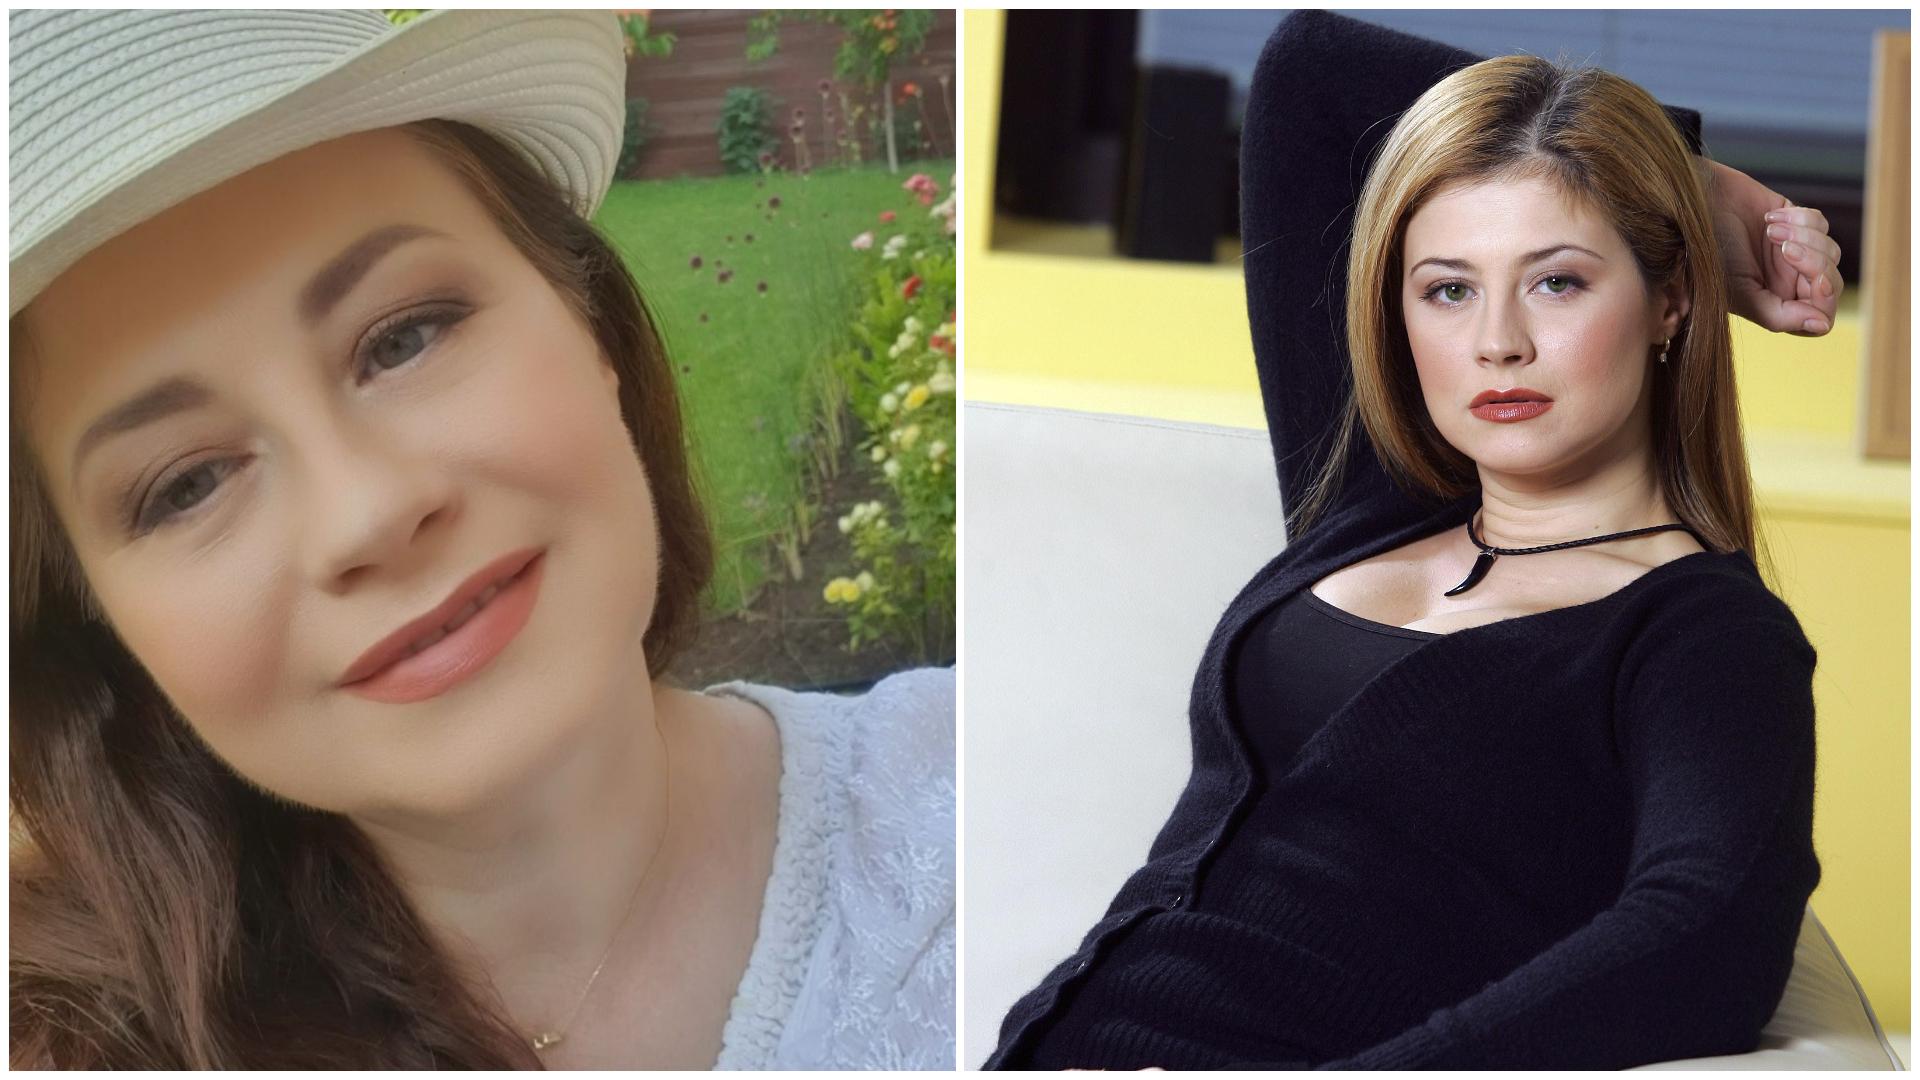 Colaj cu Corina Dănilă. Prima imagine din 2023, a doua din 2004. În stânga bluză albă, pălărie, în drapta- bluză neagră, decolteu